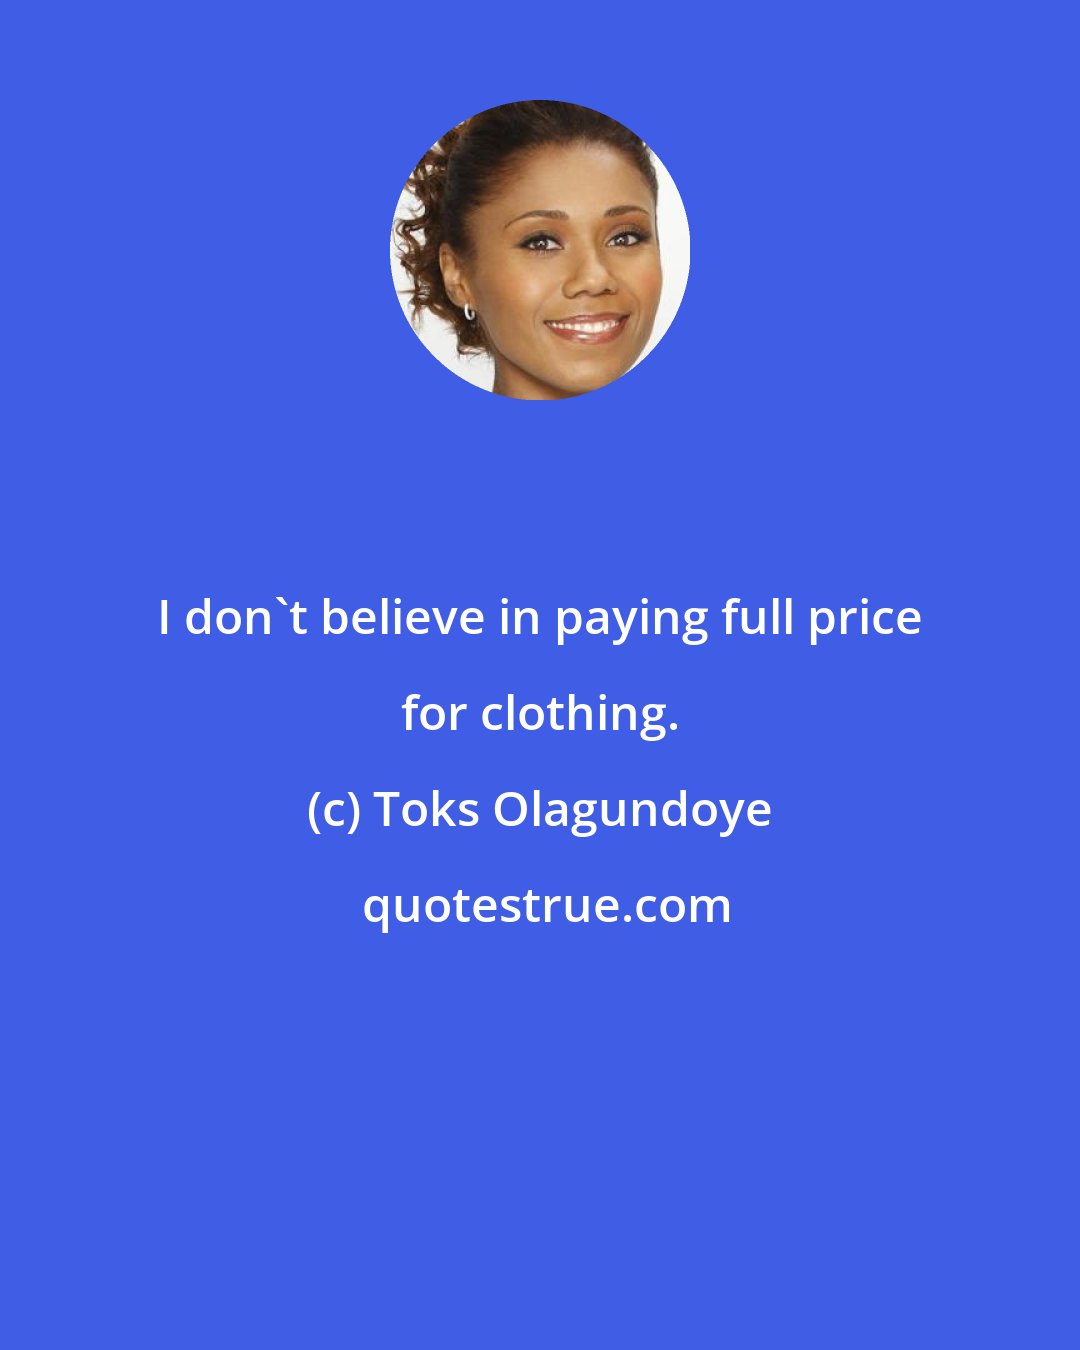 Toks Olagundoye: I don't believe in paying full price for clothing.